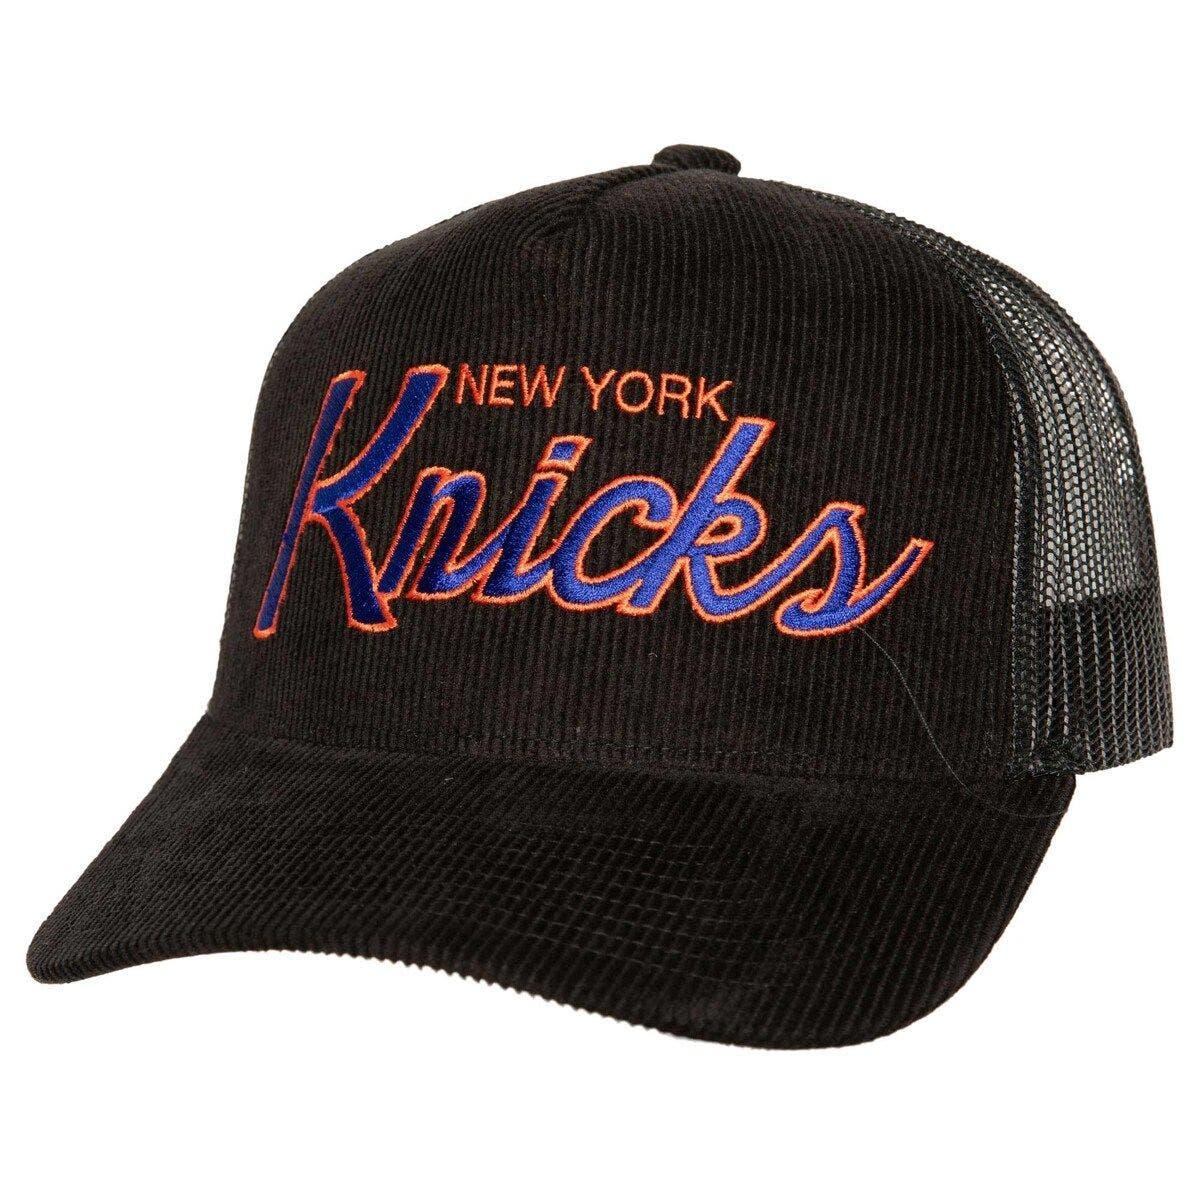 knicks trucker hat